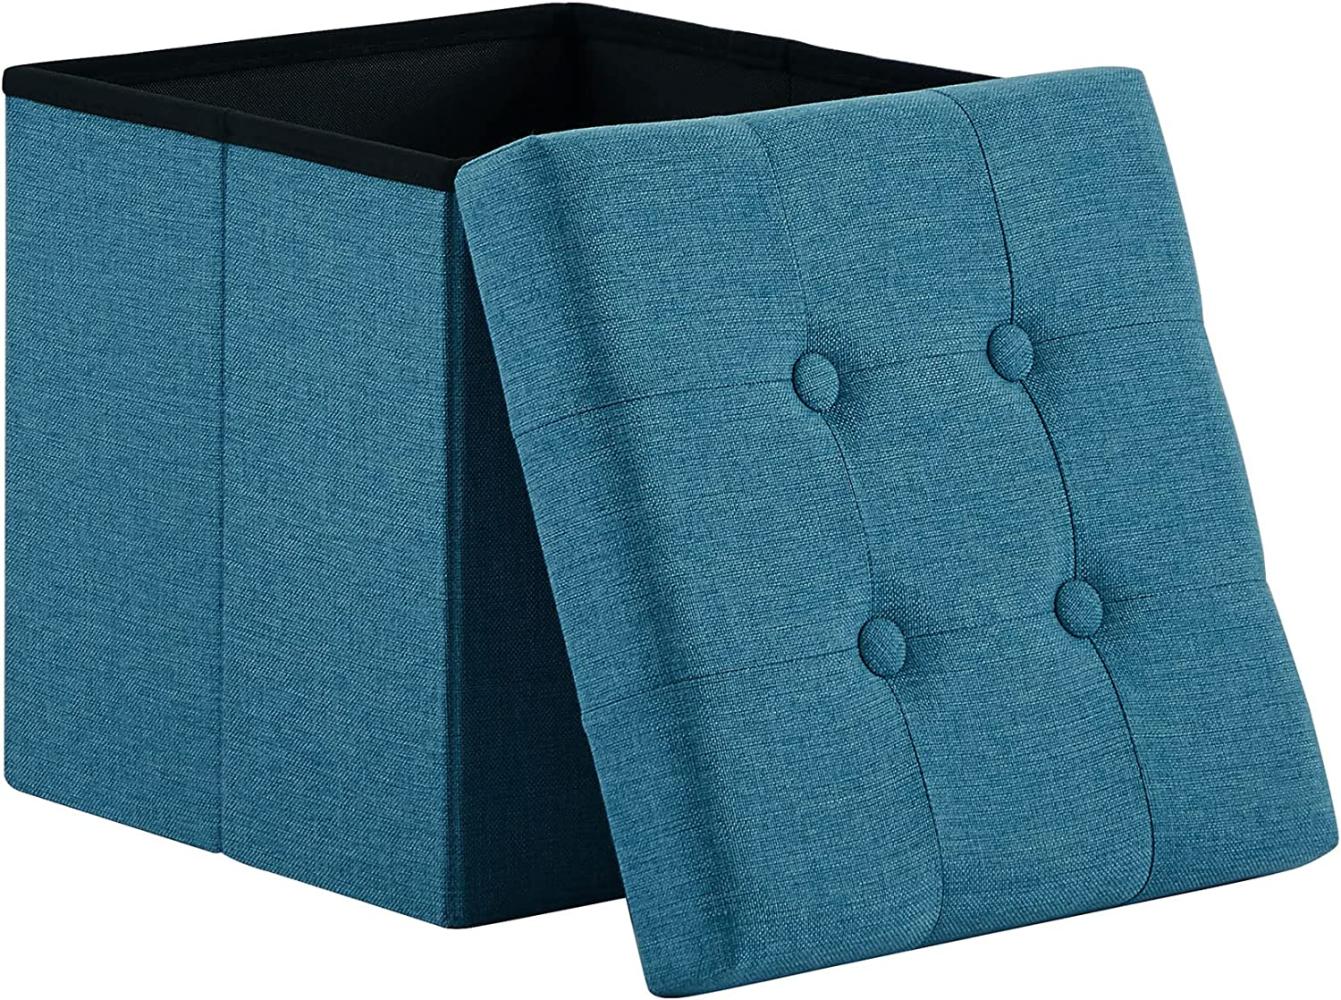 Zedelmaier Sitzhocker mit Stauraum, Fußbank Truhen Aufbewahrungsbox faltbar belastbar bis 300 kg, Leinen, 38 x 38 x 38 cm (Blau) Bild 1